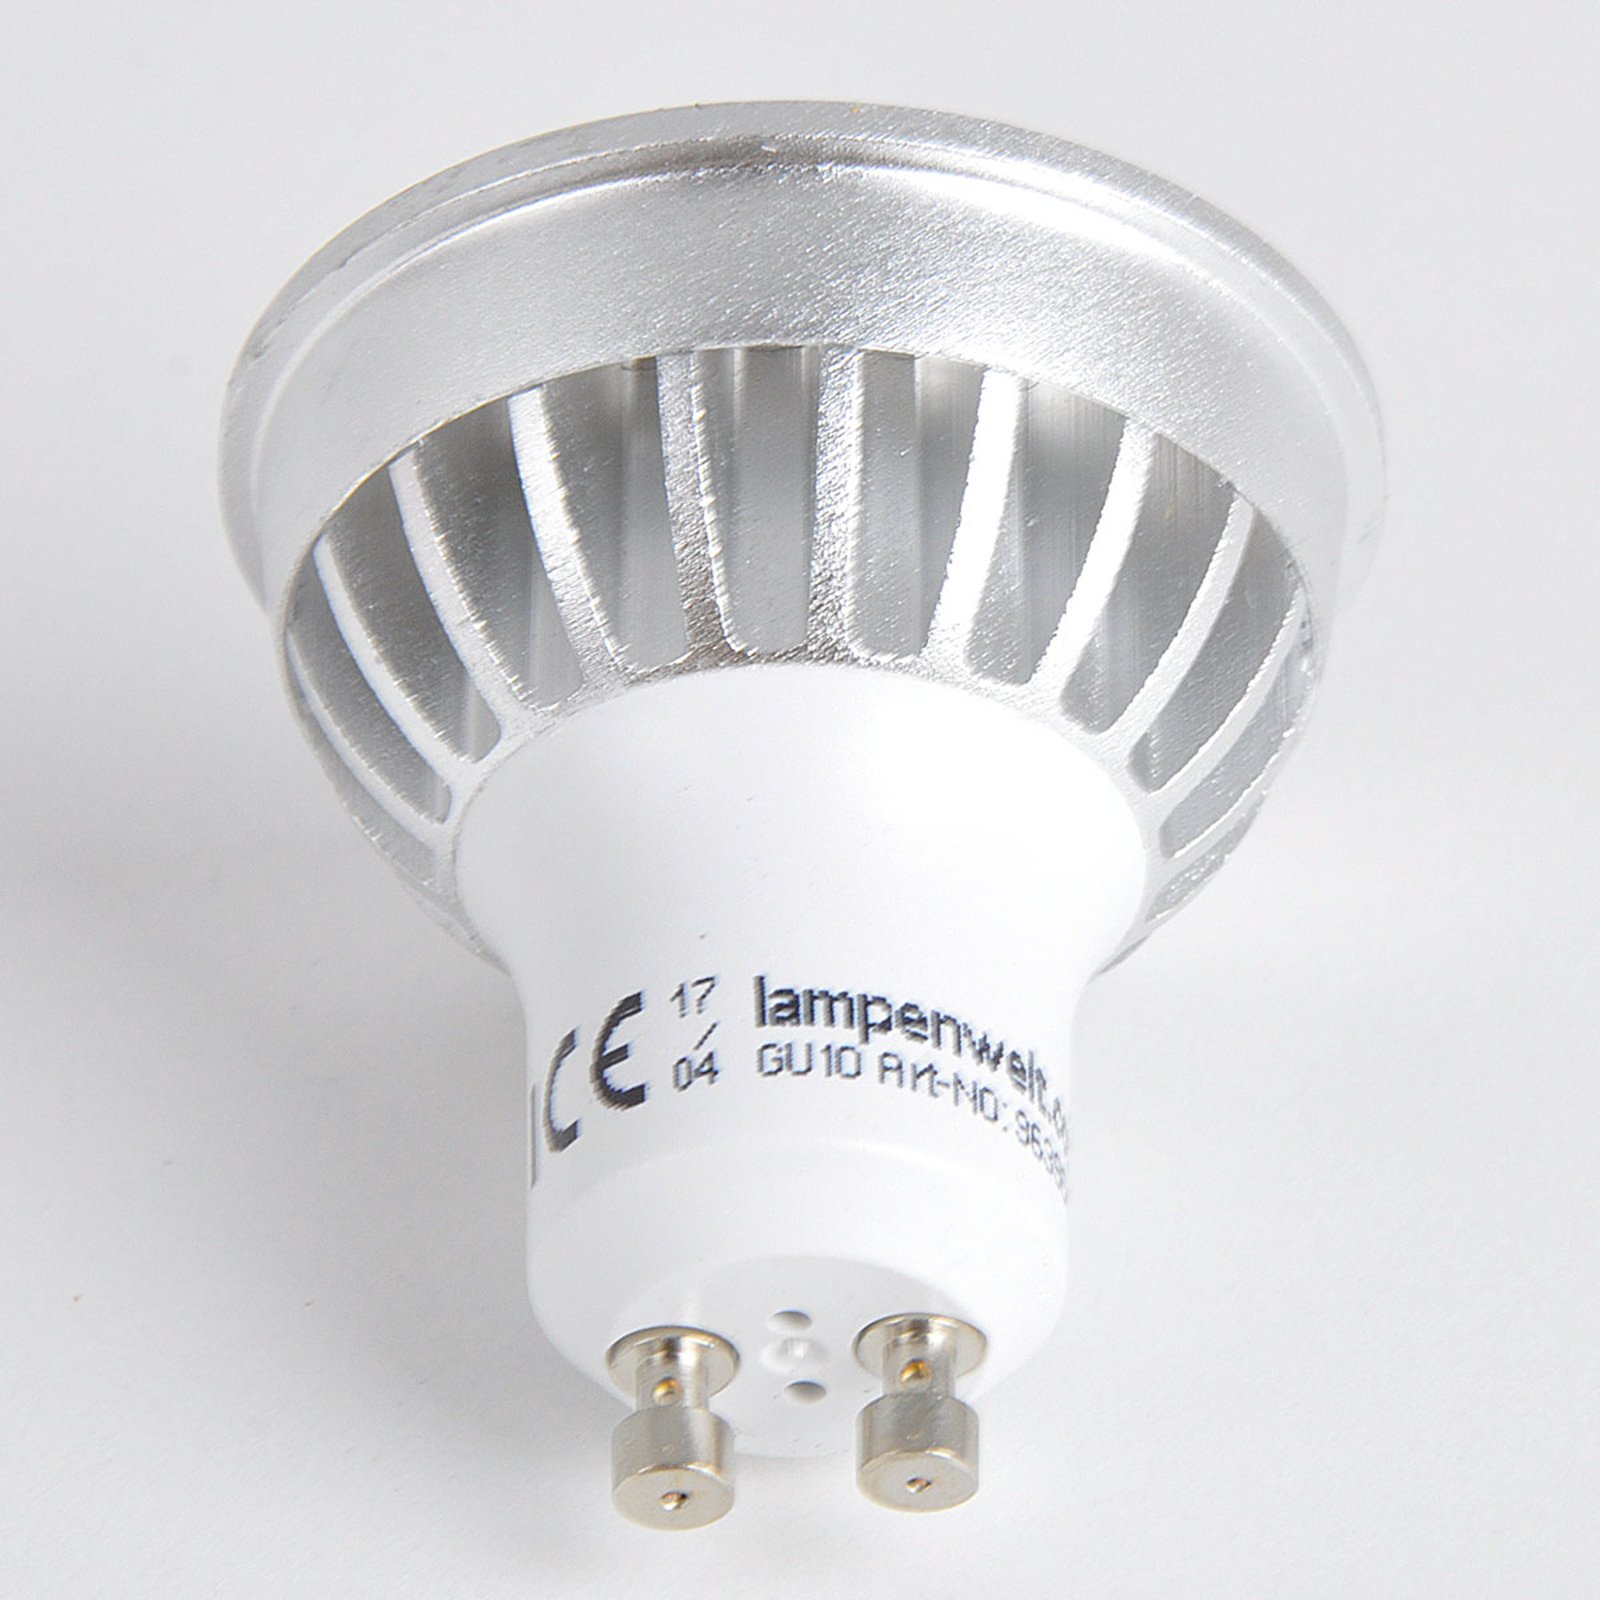 GU10 5 W 830 reflector LED bulb 55° 2-pack